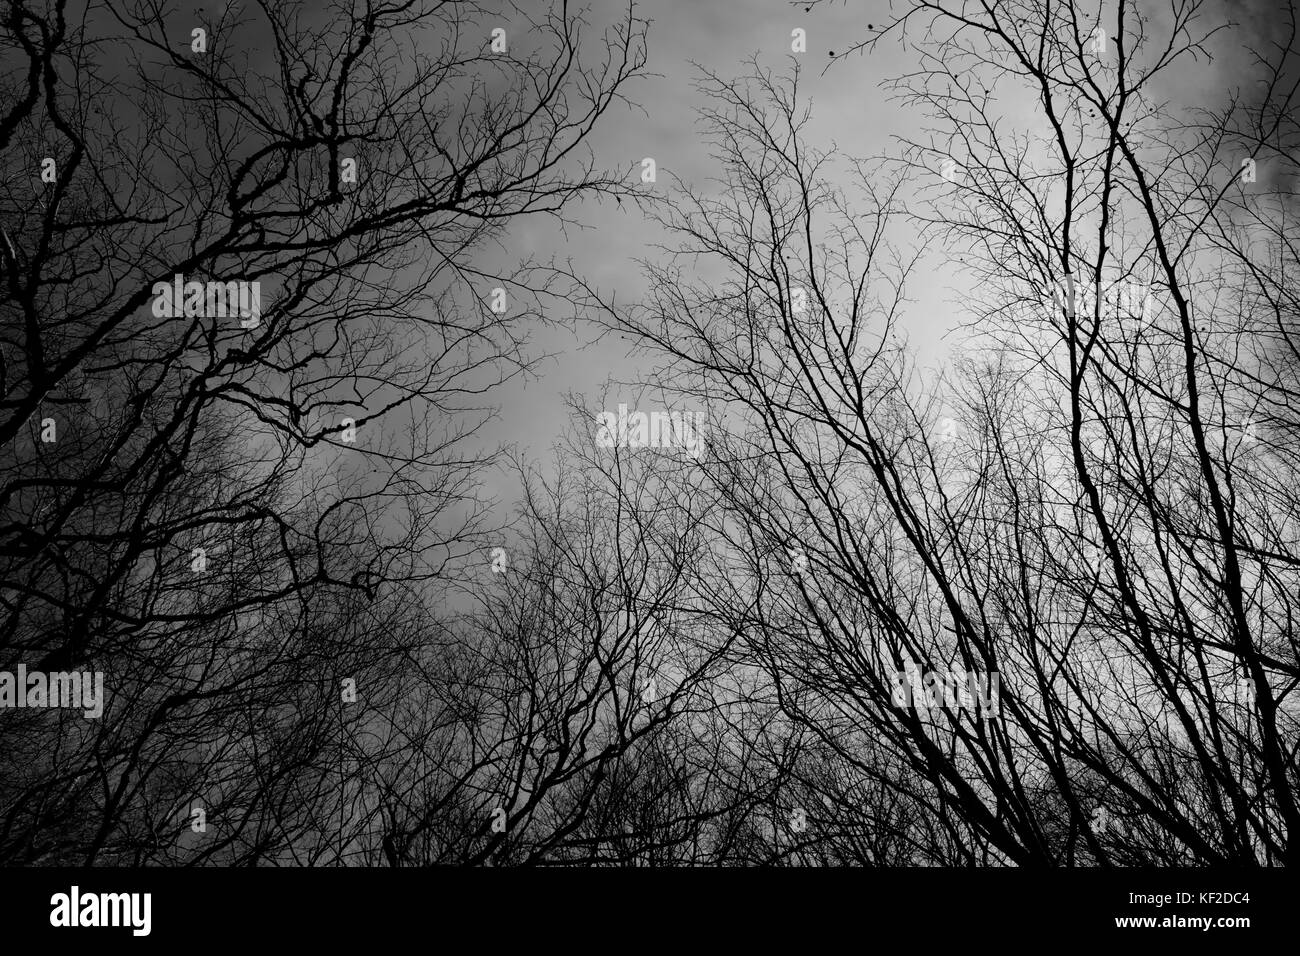 Bianco e nero eerie shot dal di sotto di alberi senza foglie. Foto Stock